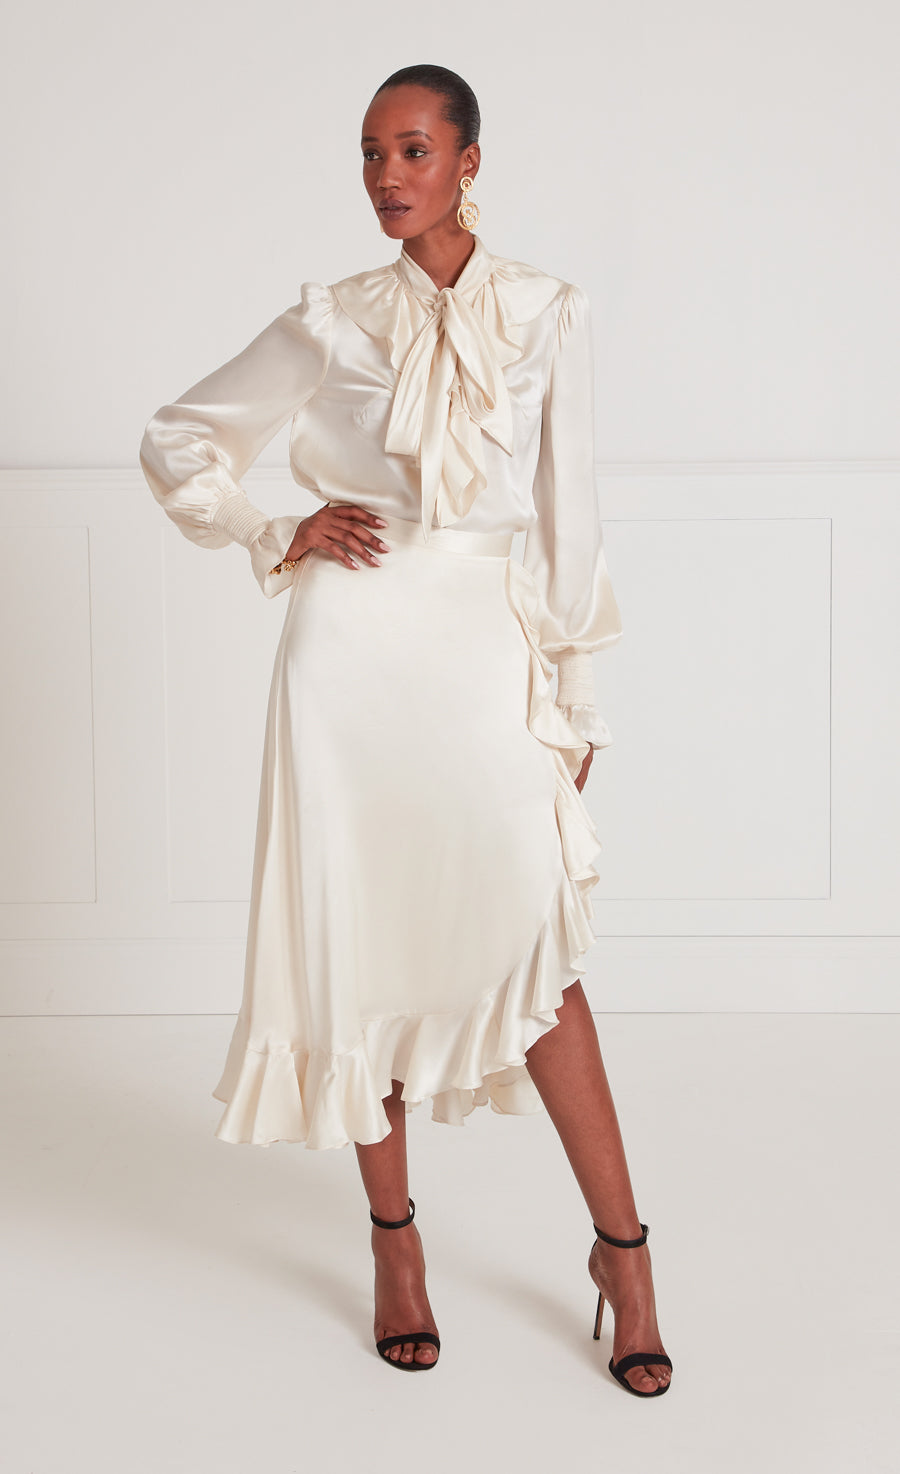 Skyler Ruffle Skirt - Winter White